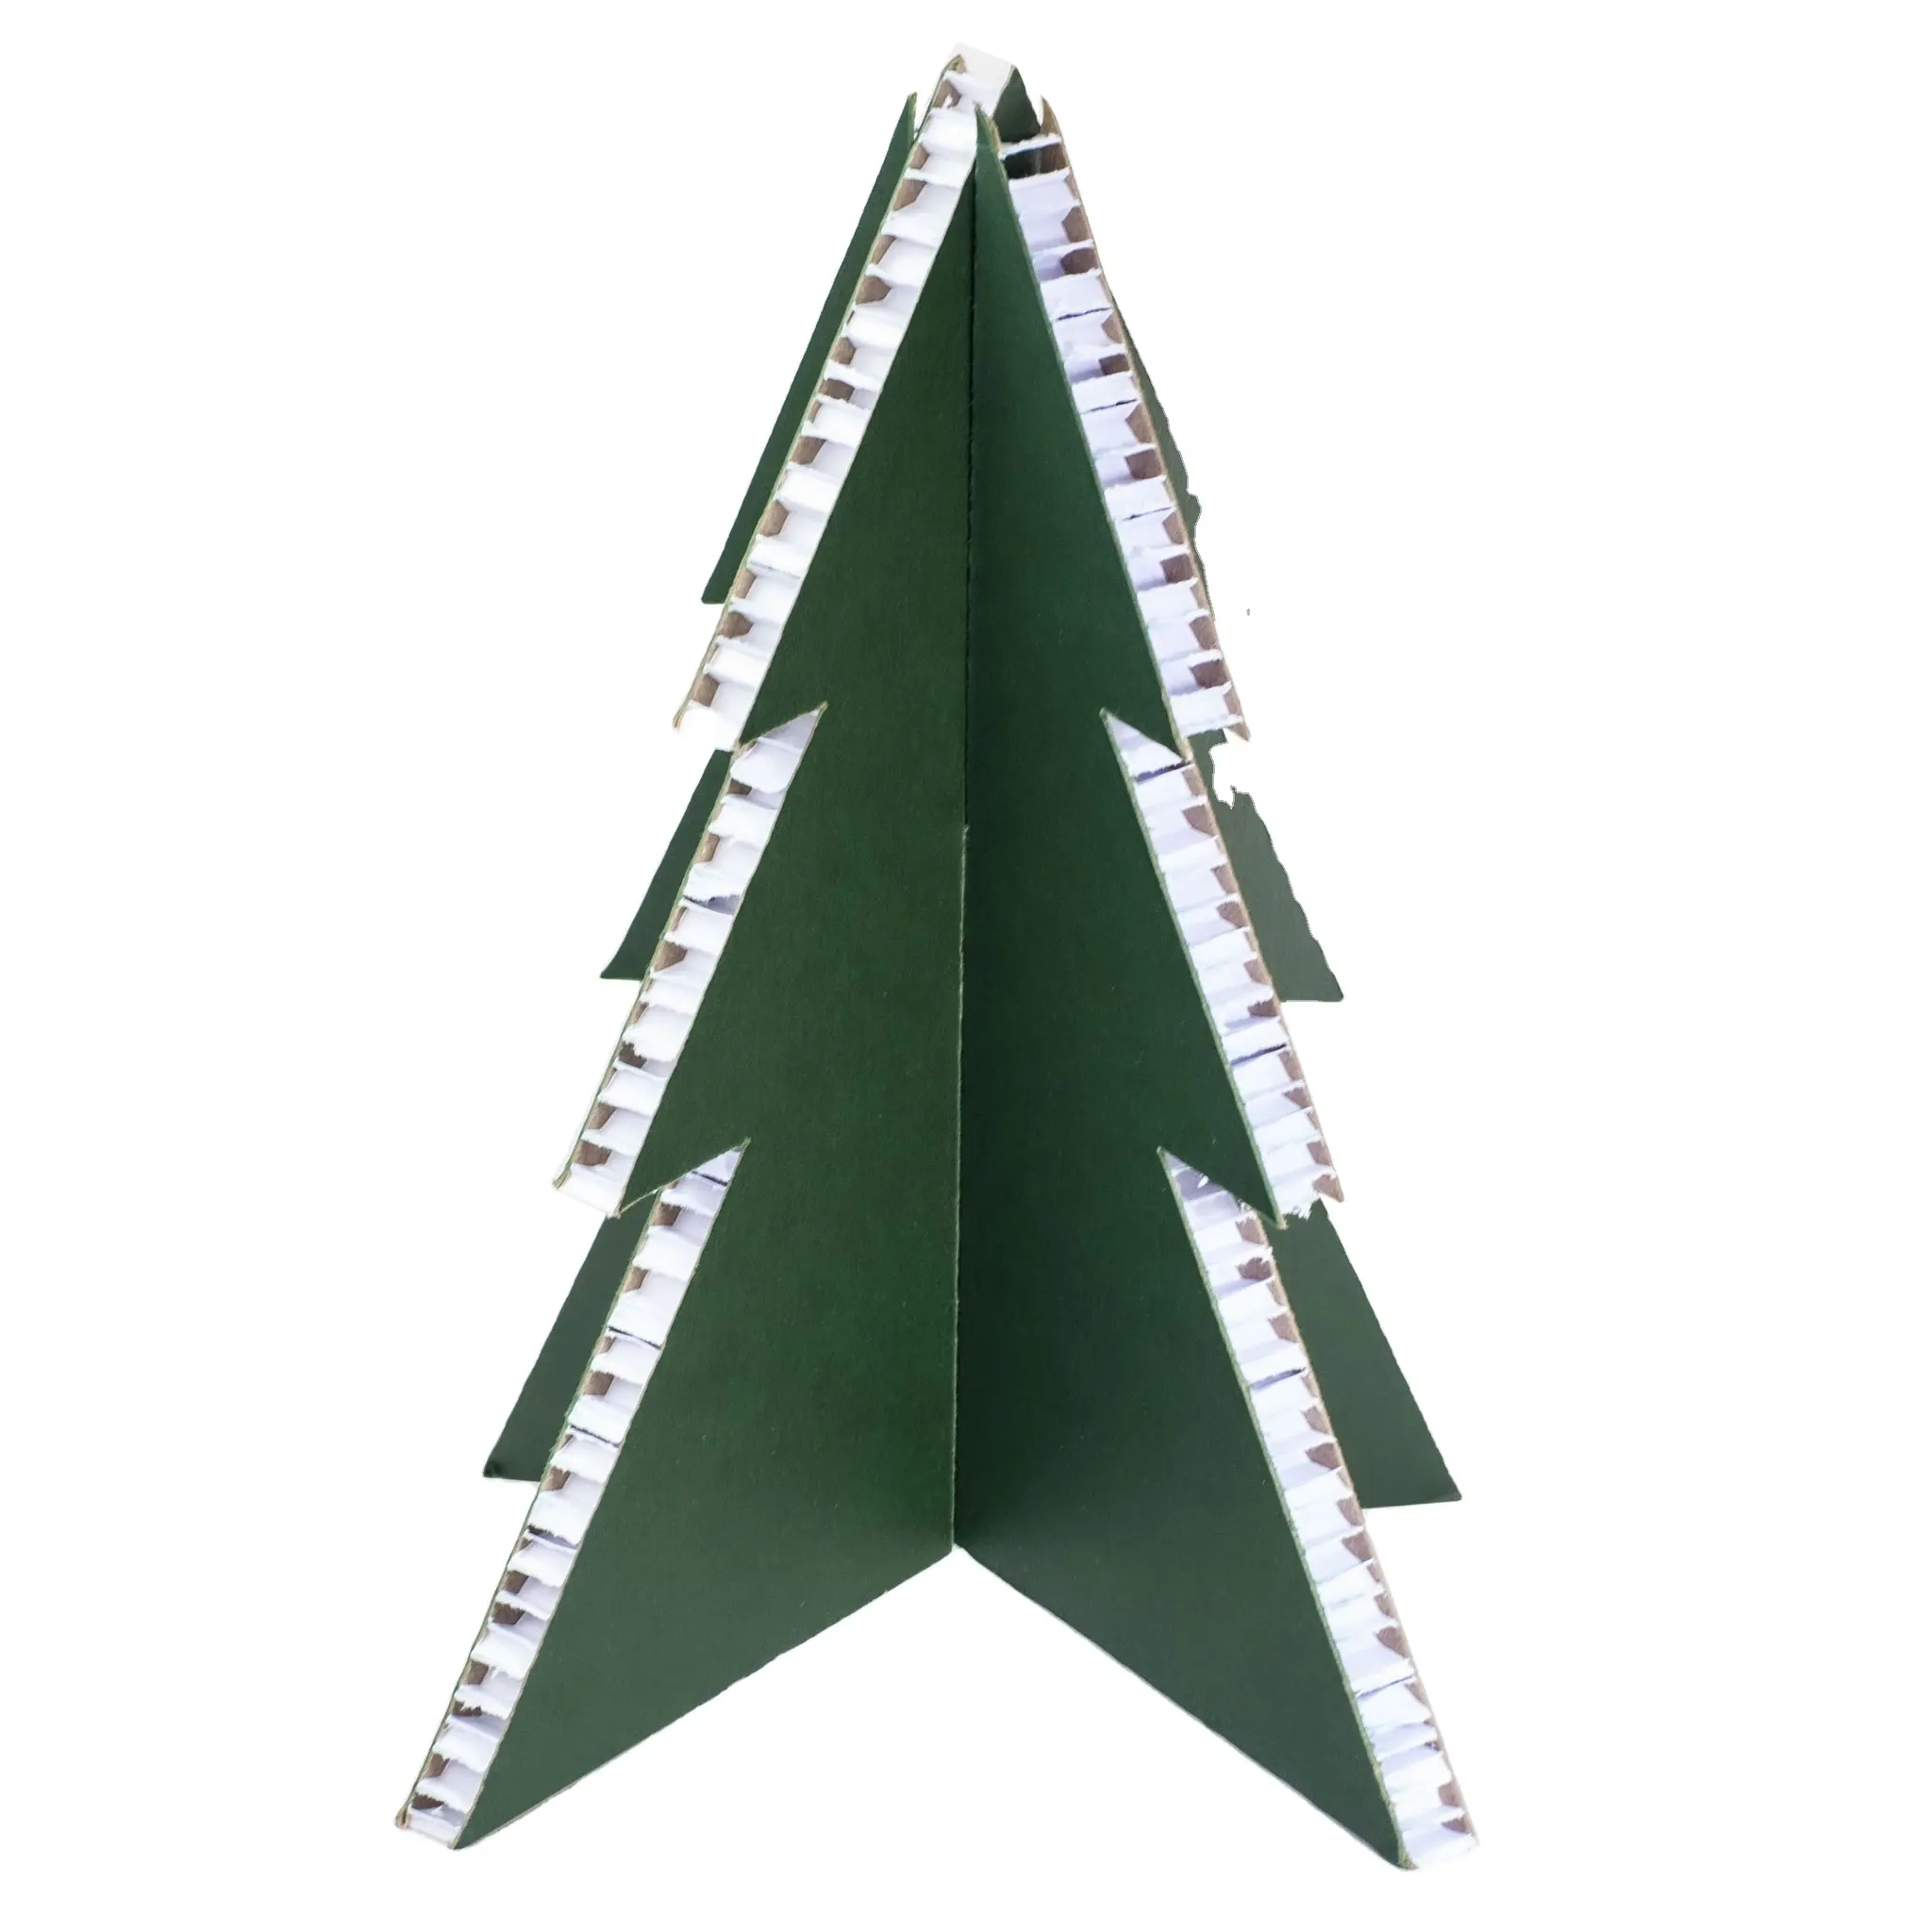 شجرة عيد الميلاد الصغيرة مزينة باللون الأخضر الثلجي من قبل Rippotai المصنوعة في إيطاليا زخرفة بلاستيكية مجانية عناصر جديدة